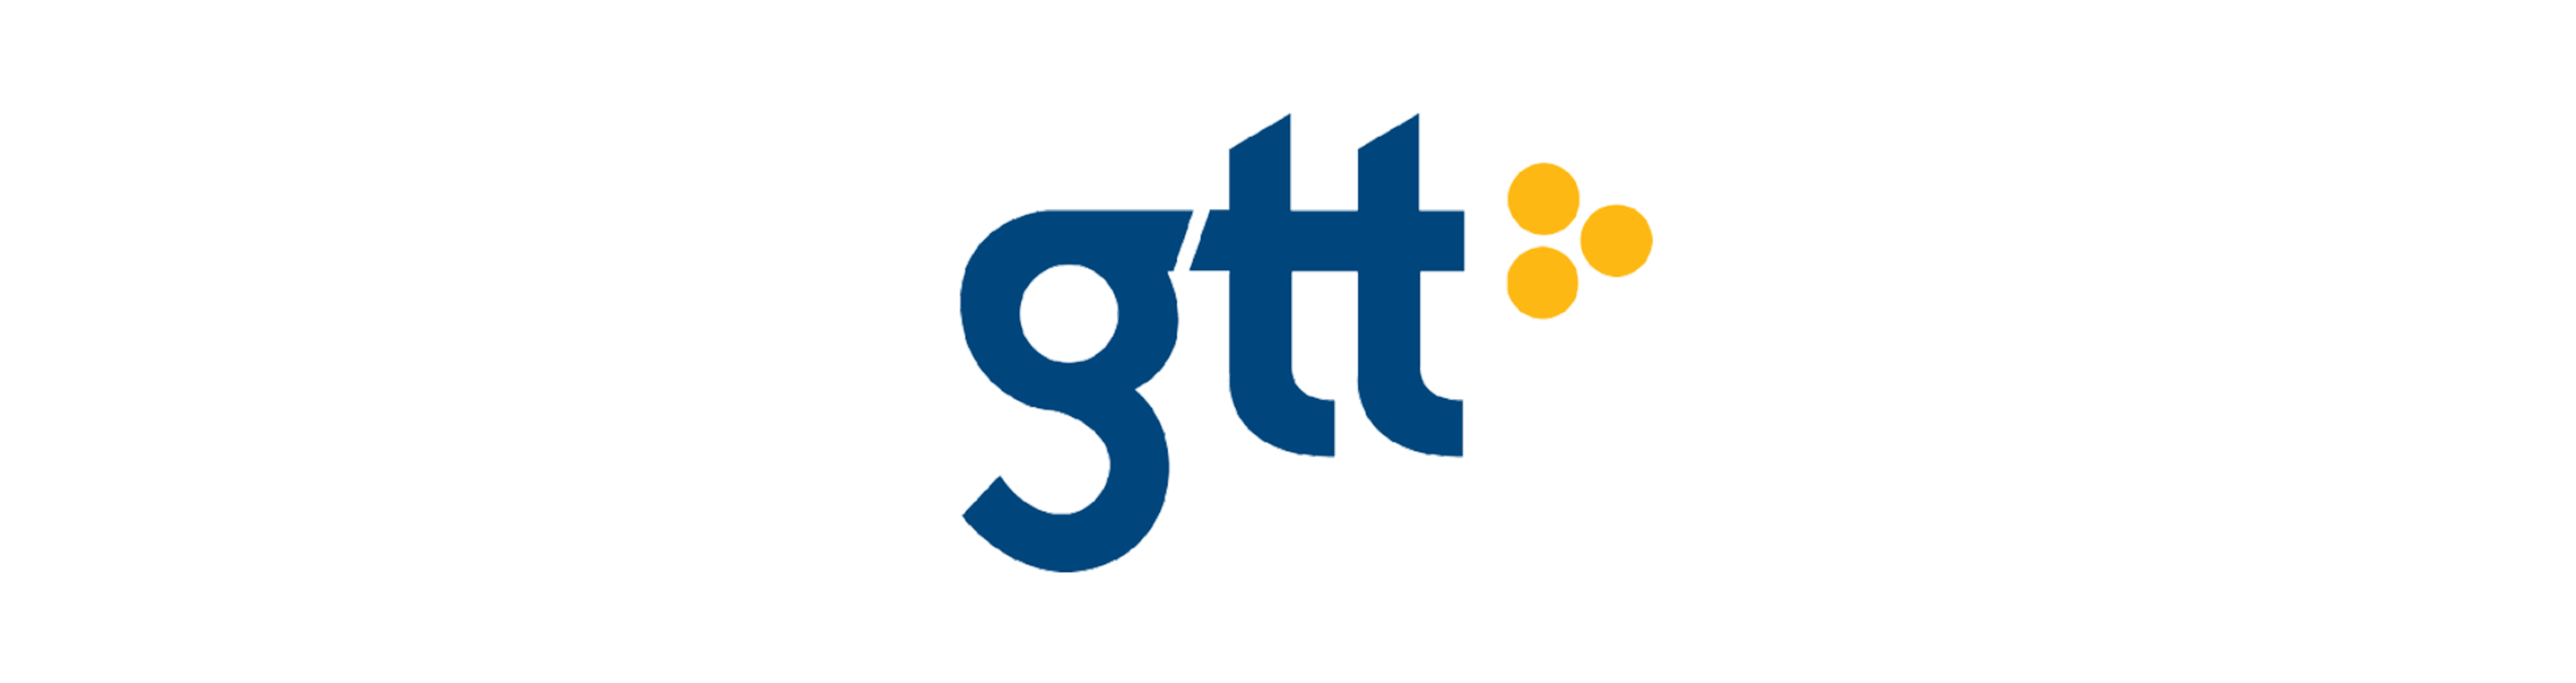 Gtt Logo - gtt-logo - 5NINES NI